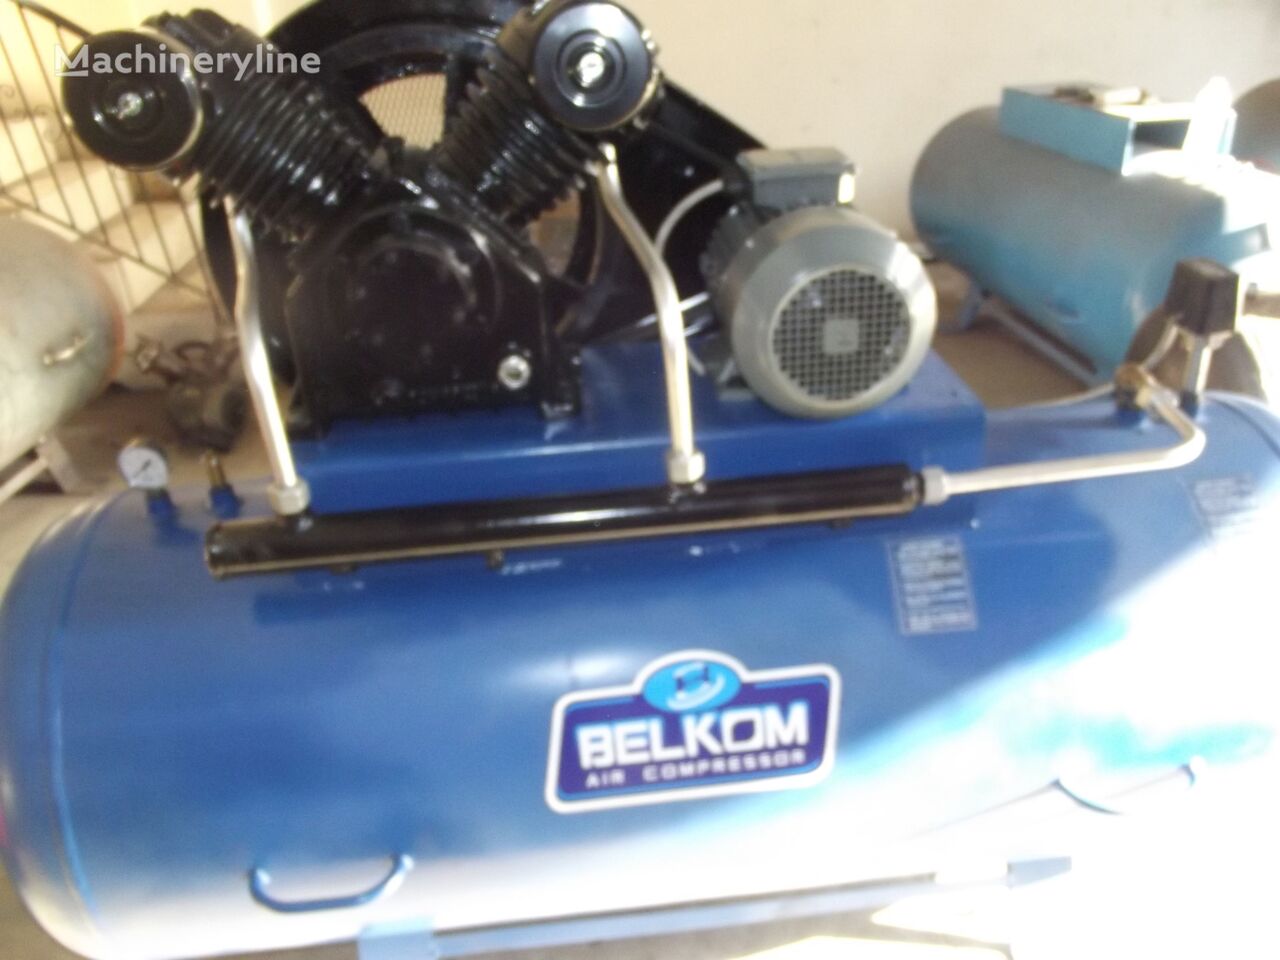 new Belkom 500Lt Yüzde Yüz Yerli Üretim 7,5Hp Çift Kafa Ponolu Sıfır Kompre portable compressor